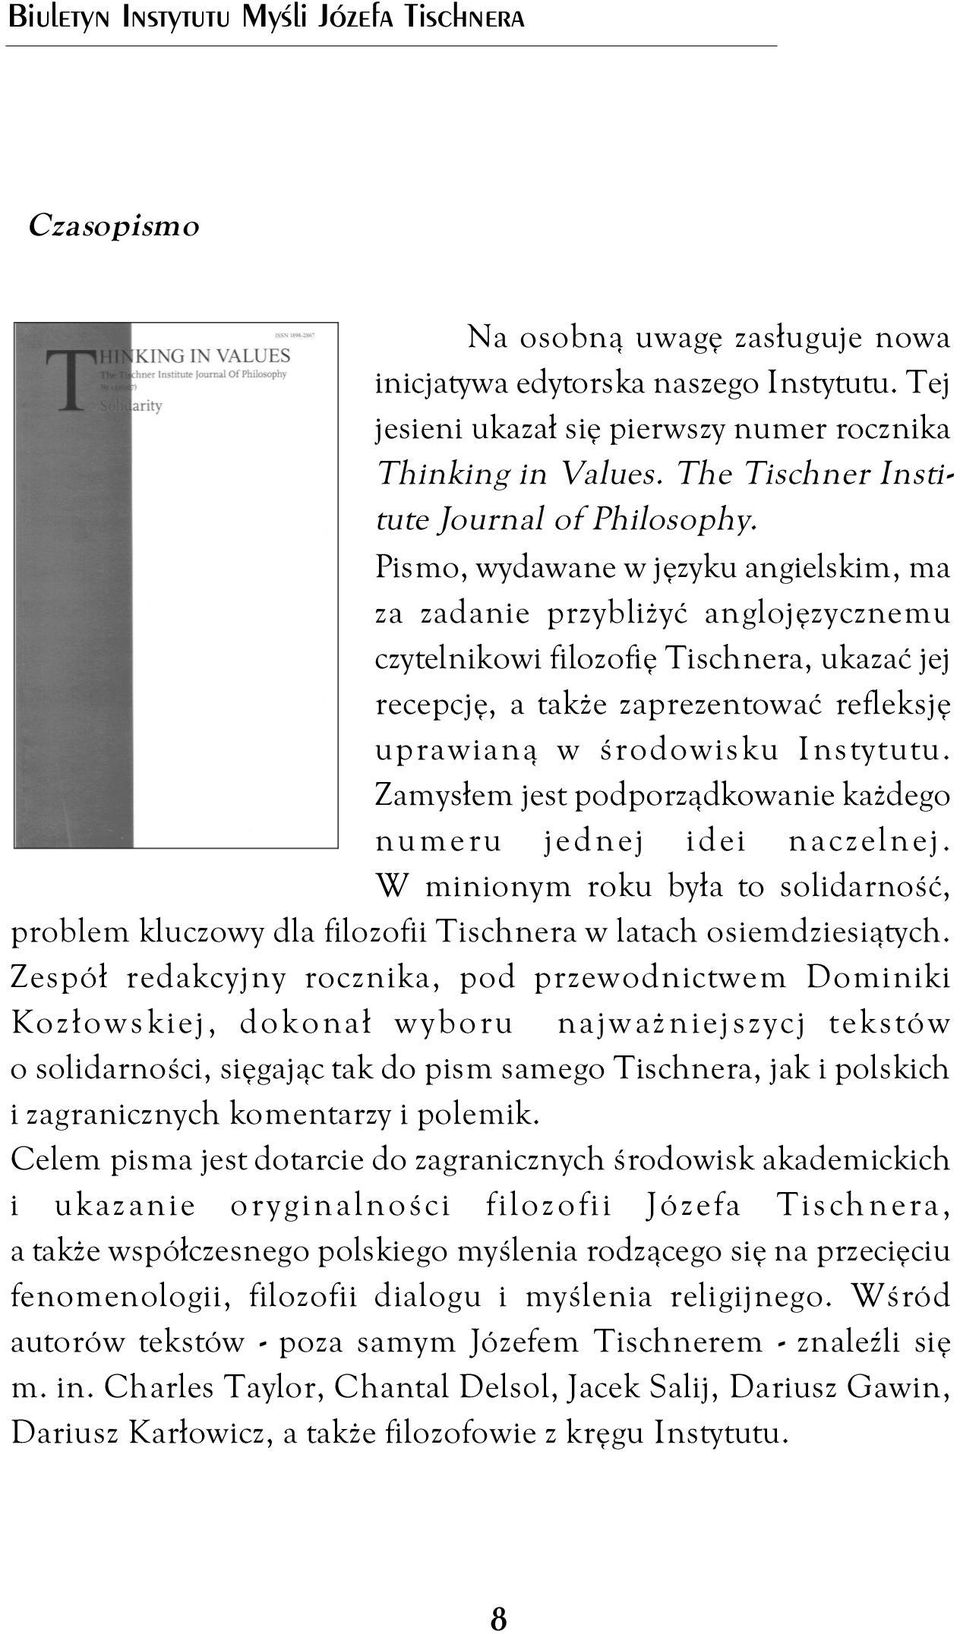 Pismo, wydawane w języku angielskim, ma za zadanie przybliżyć anglojęzycznemu czytelnikowi filozofię Tischnera, ukazać jej recepcję, a także zaprezentować refleksję uprawianą w środowisku Instytutu.